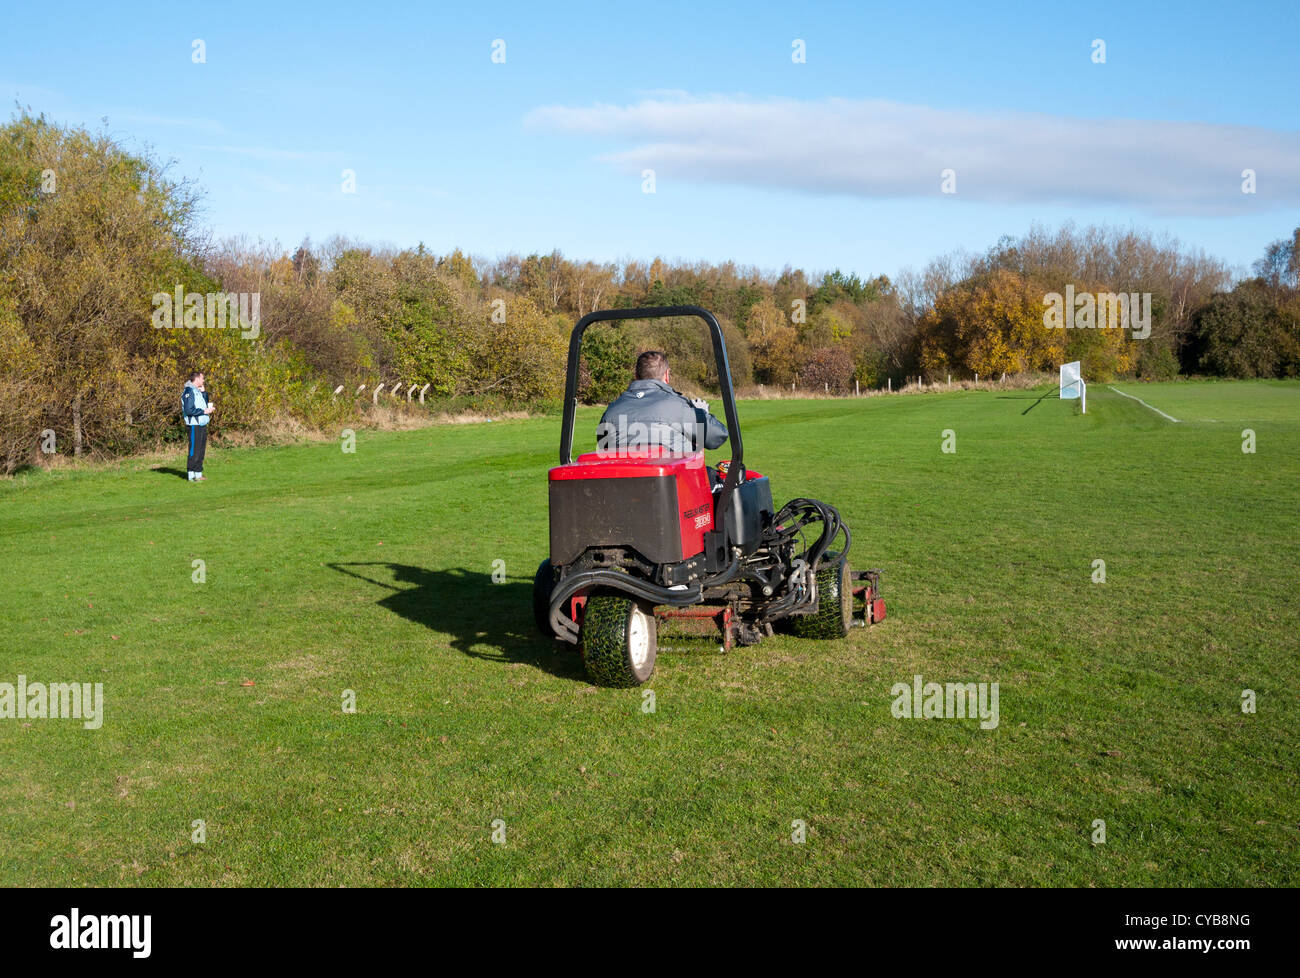 Man cutting grass on a industrial type grass cutter, England UK. Stock Photo